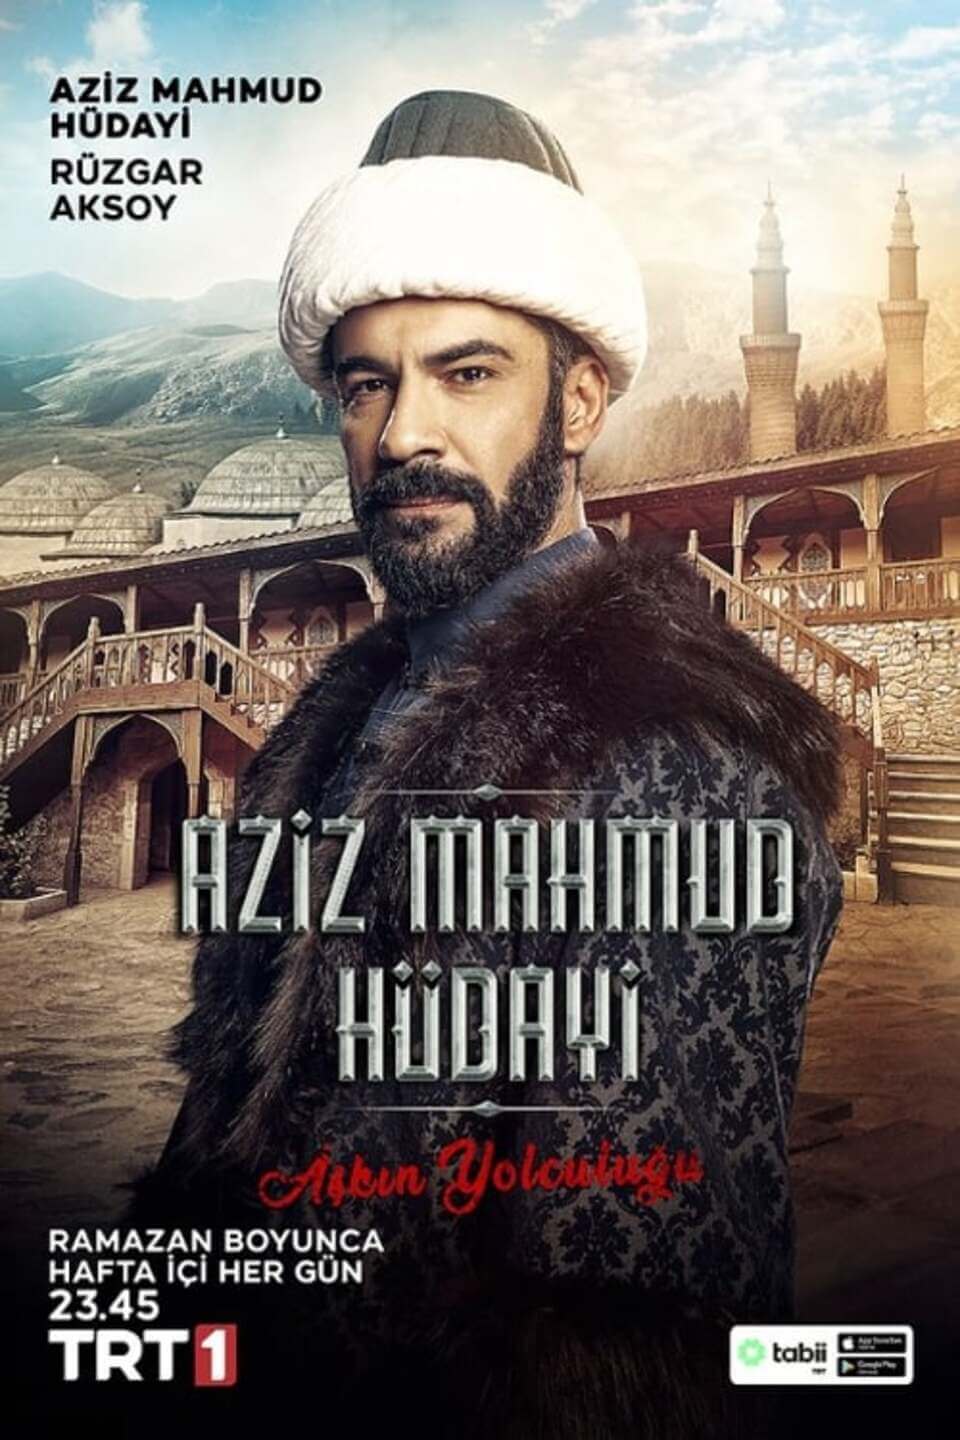 TV ratings for Aziz Mahmud Hüdayi: Aşkın Yolculuğu in New Zealand. TRT 1 TV series